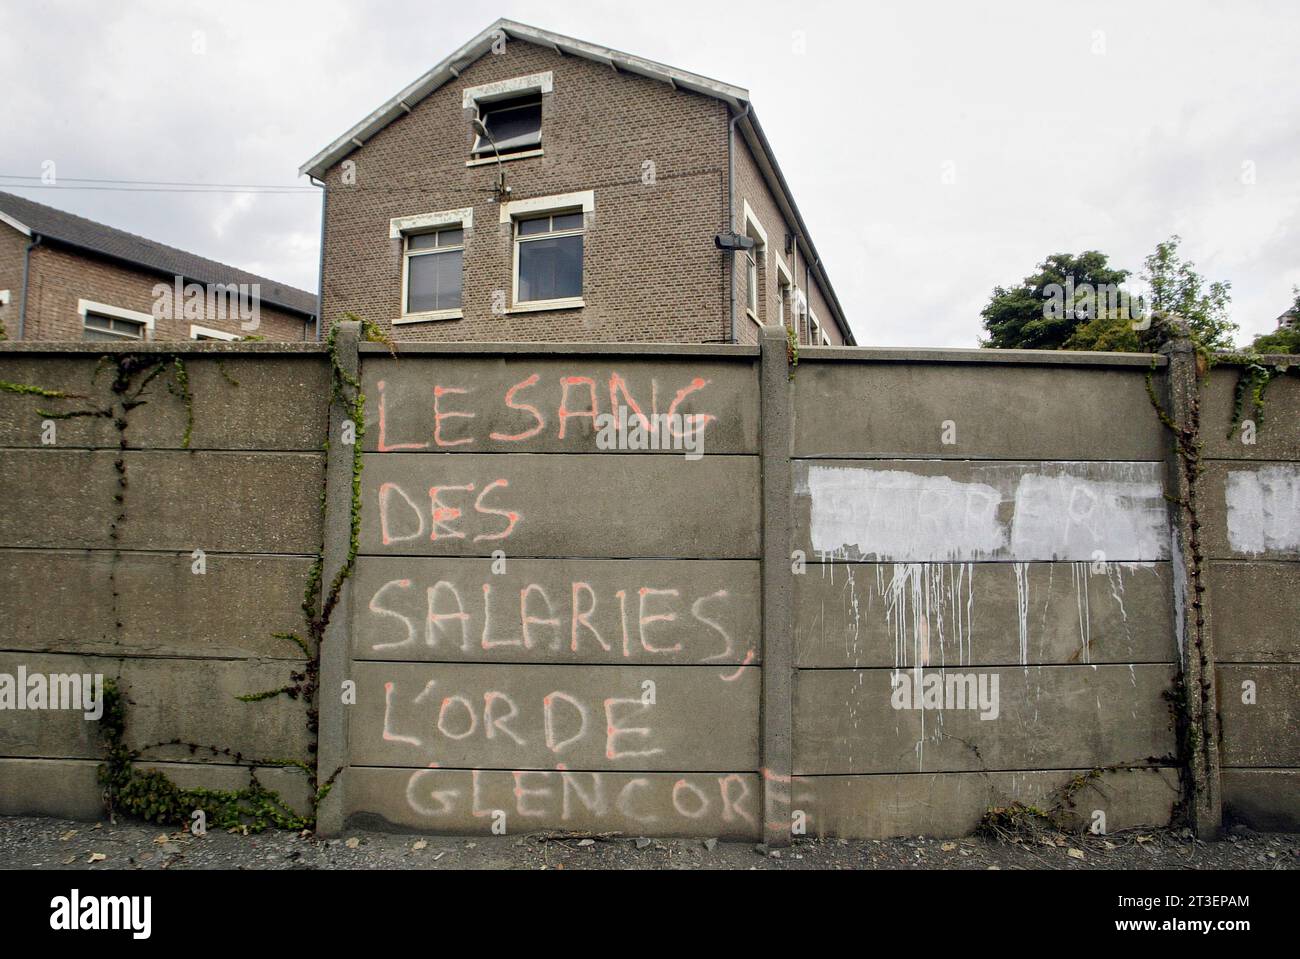 Noyelles-Godault (Francia settentrionale), 20 luglio 2003: Inscription le sang des salaries, l'or de Glencore (sangue dei lavoratori, oro di Glencore) sullo sconfinato Foto Stock